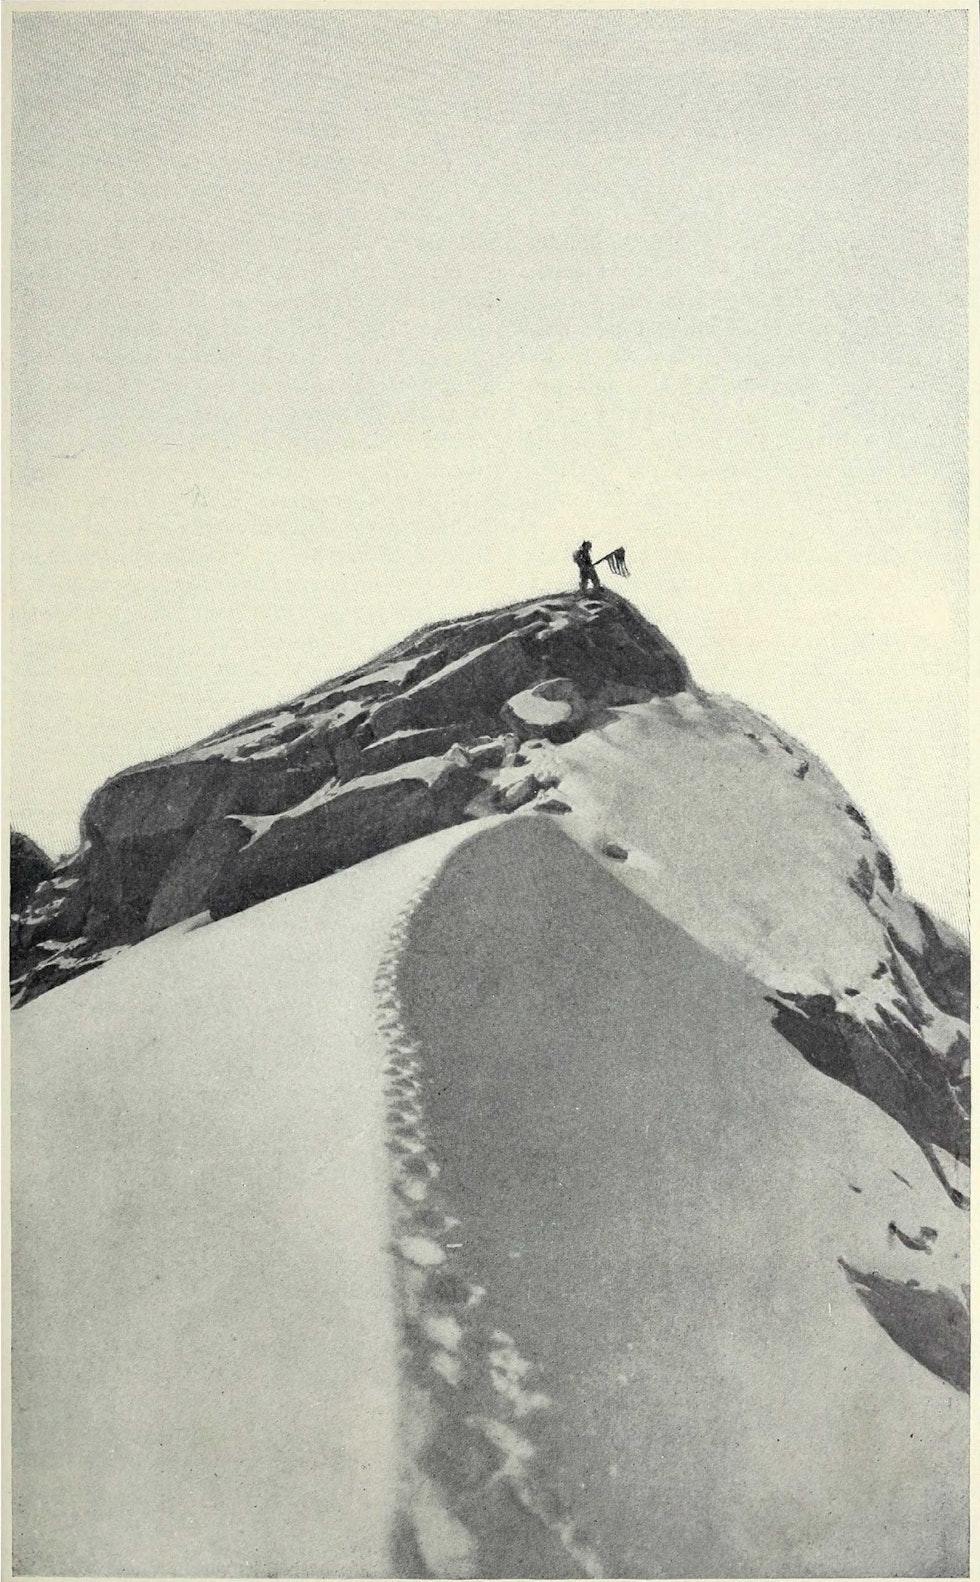 FAKE PEAK: Denne fjellryggen i Denali-massivet har fått navnet «Fake Peak» etter Cooks fotografi, som avslørte at han ikke hadde vært på toppen av Denali, som hevdet. Foto: Granger